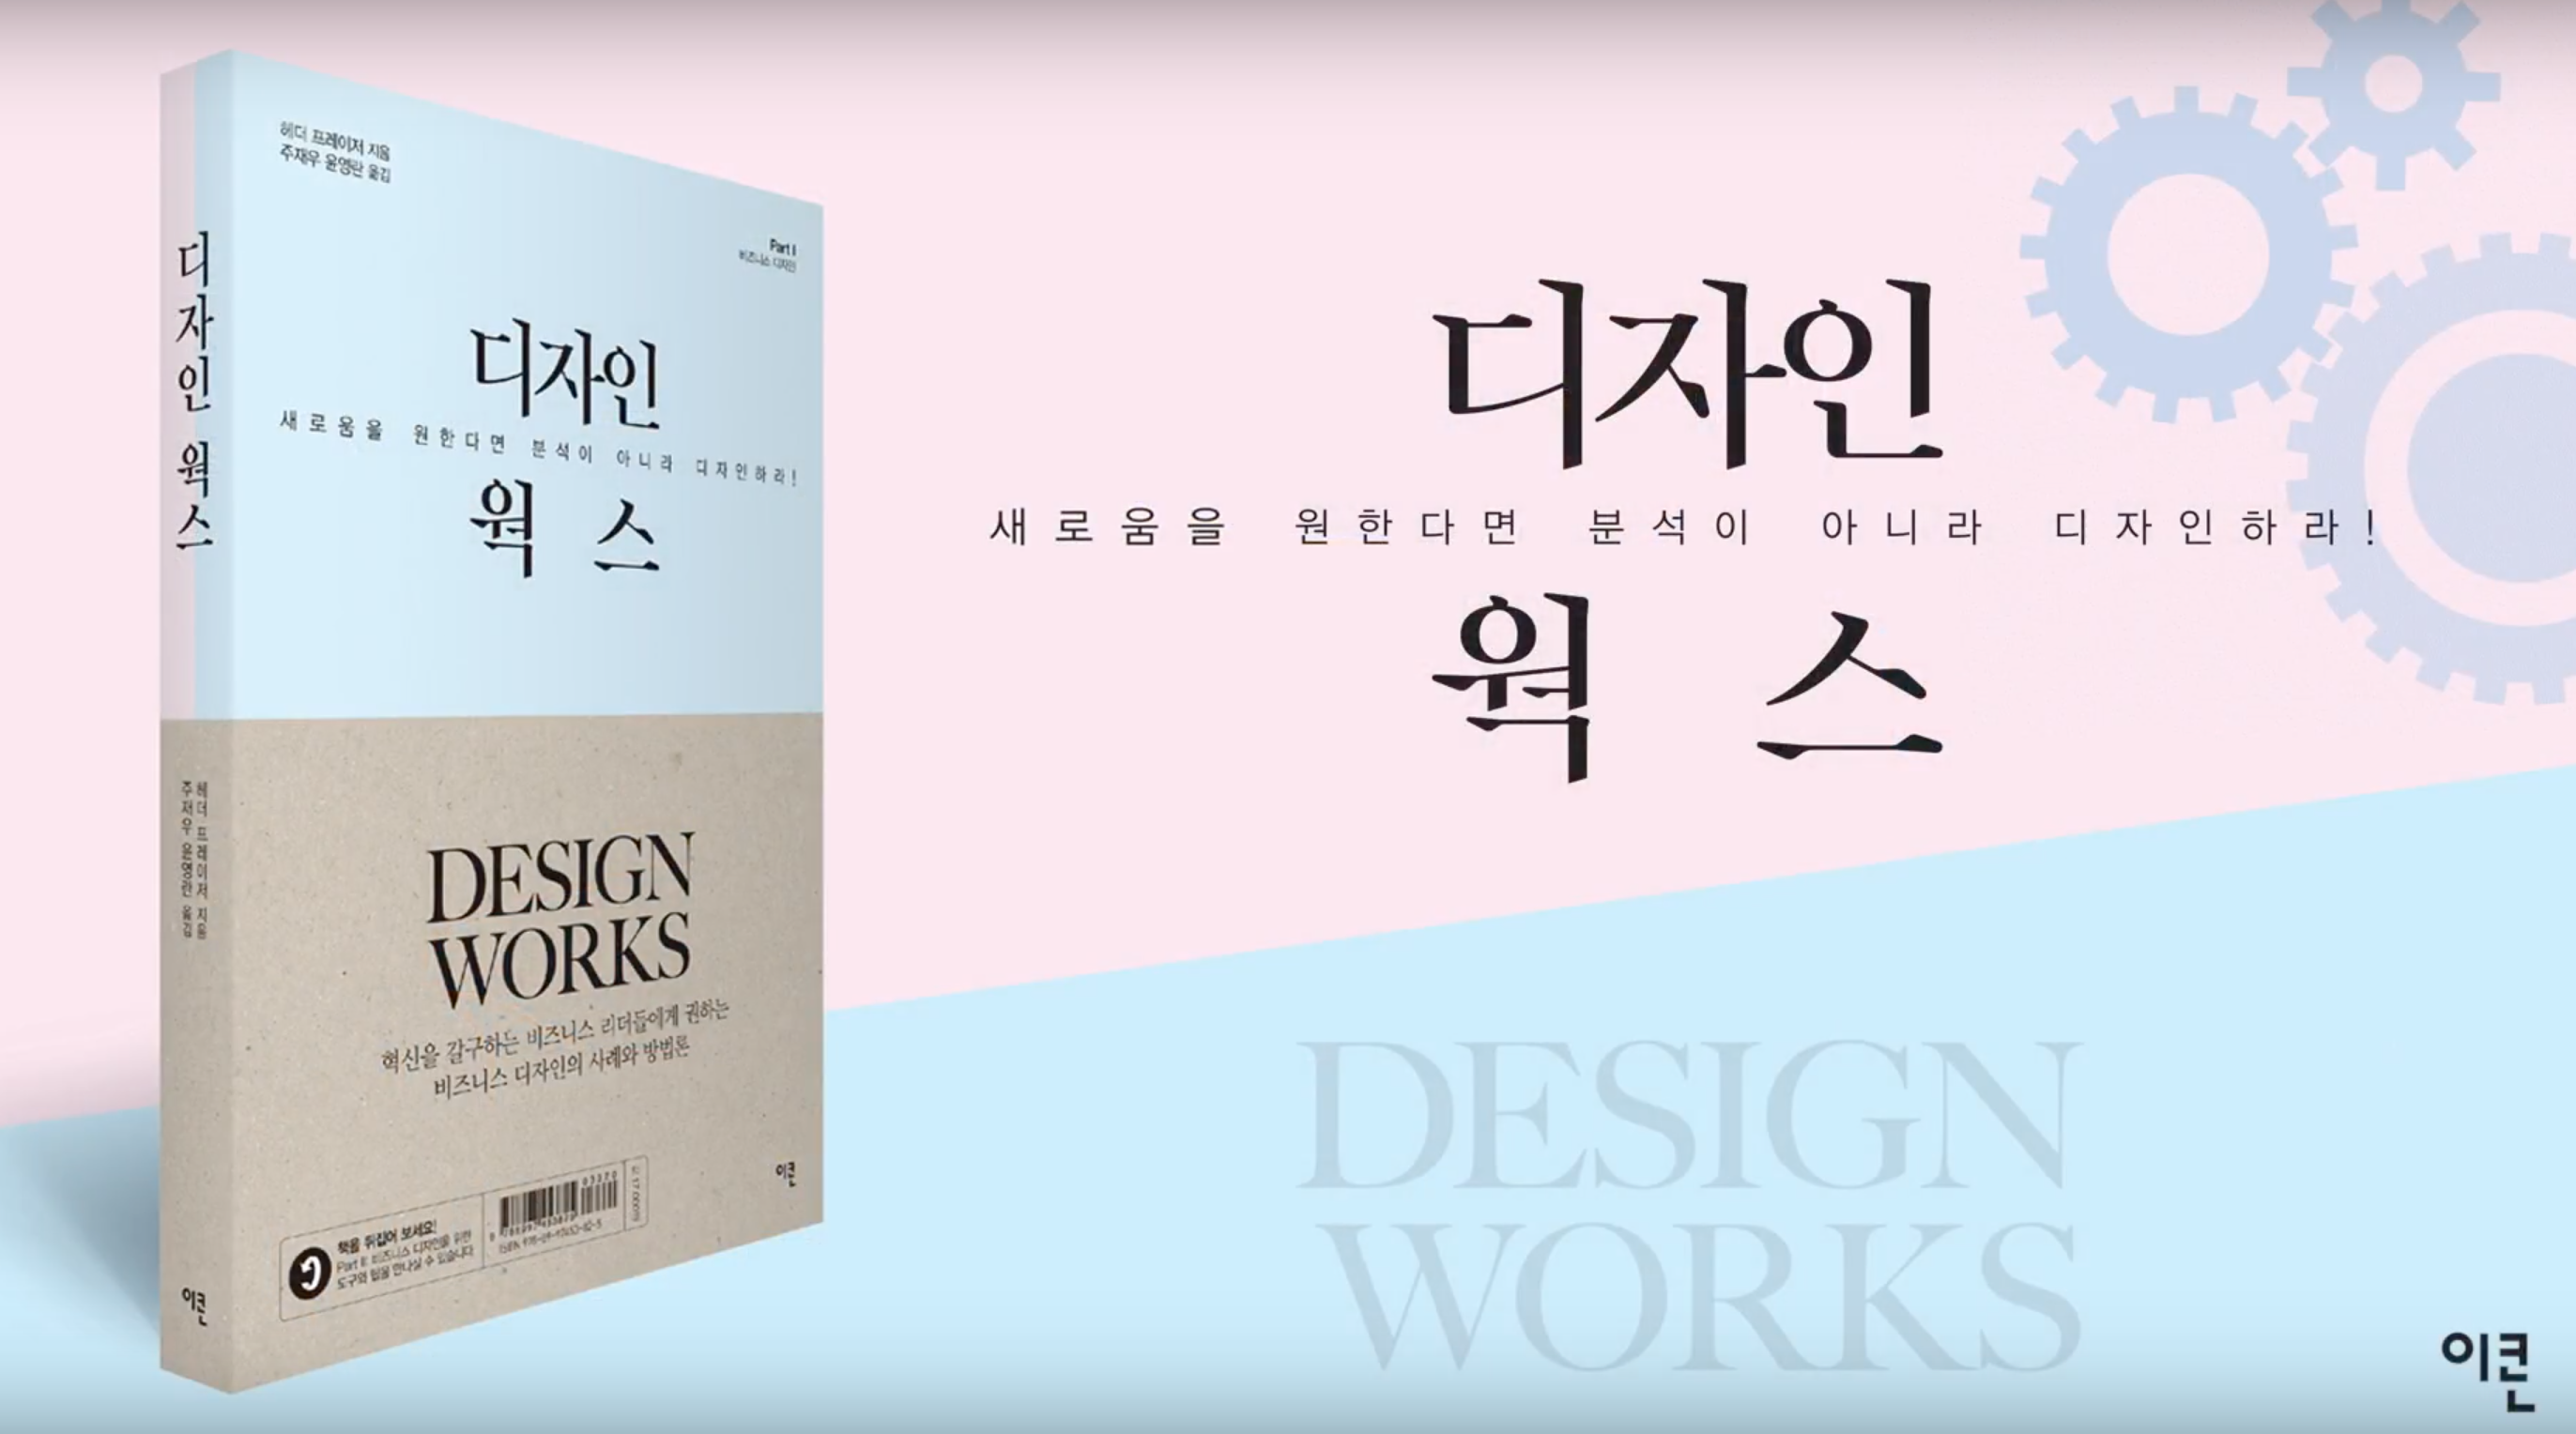 디자인웍스 (Designworks) 번역서 출판